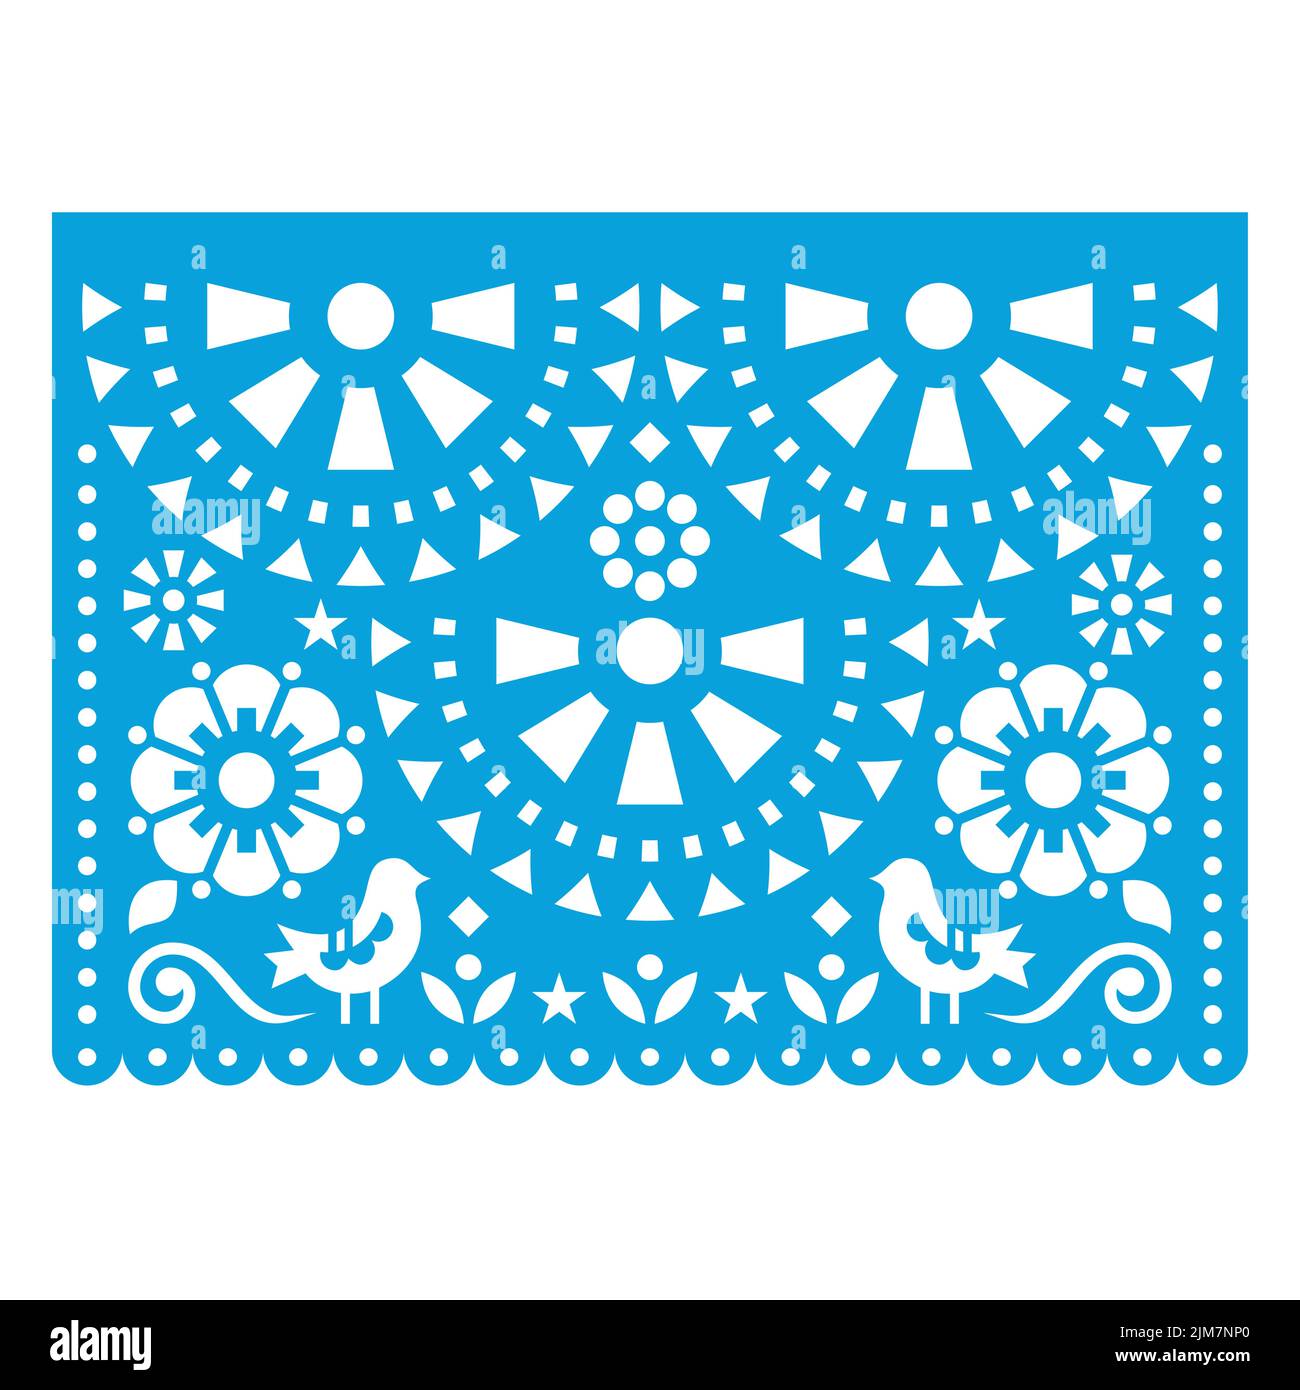 Papel Picado Vektor-Design mit zwei Vögeln und Blumen, mexikanische Ausschnittpapier Girlande Dekoration in blau auf weiß Stock Vektor